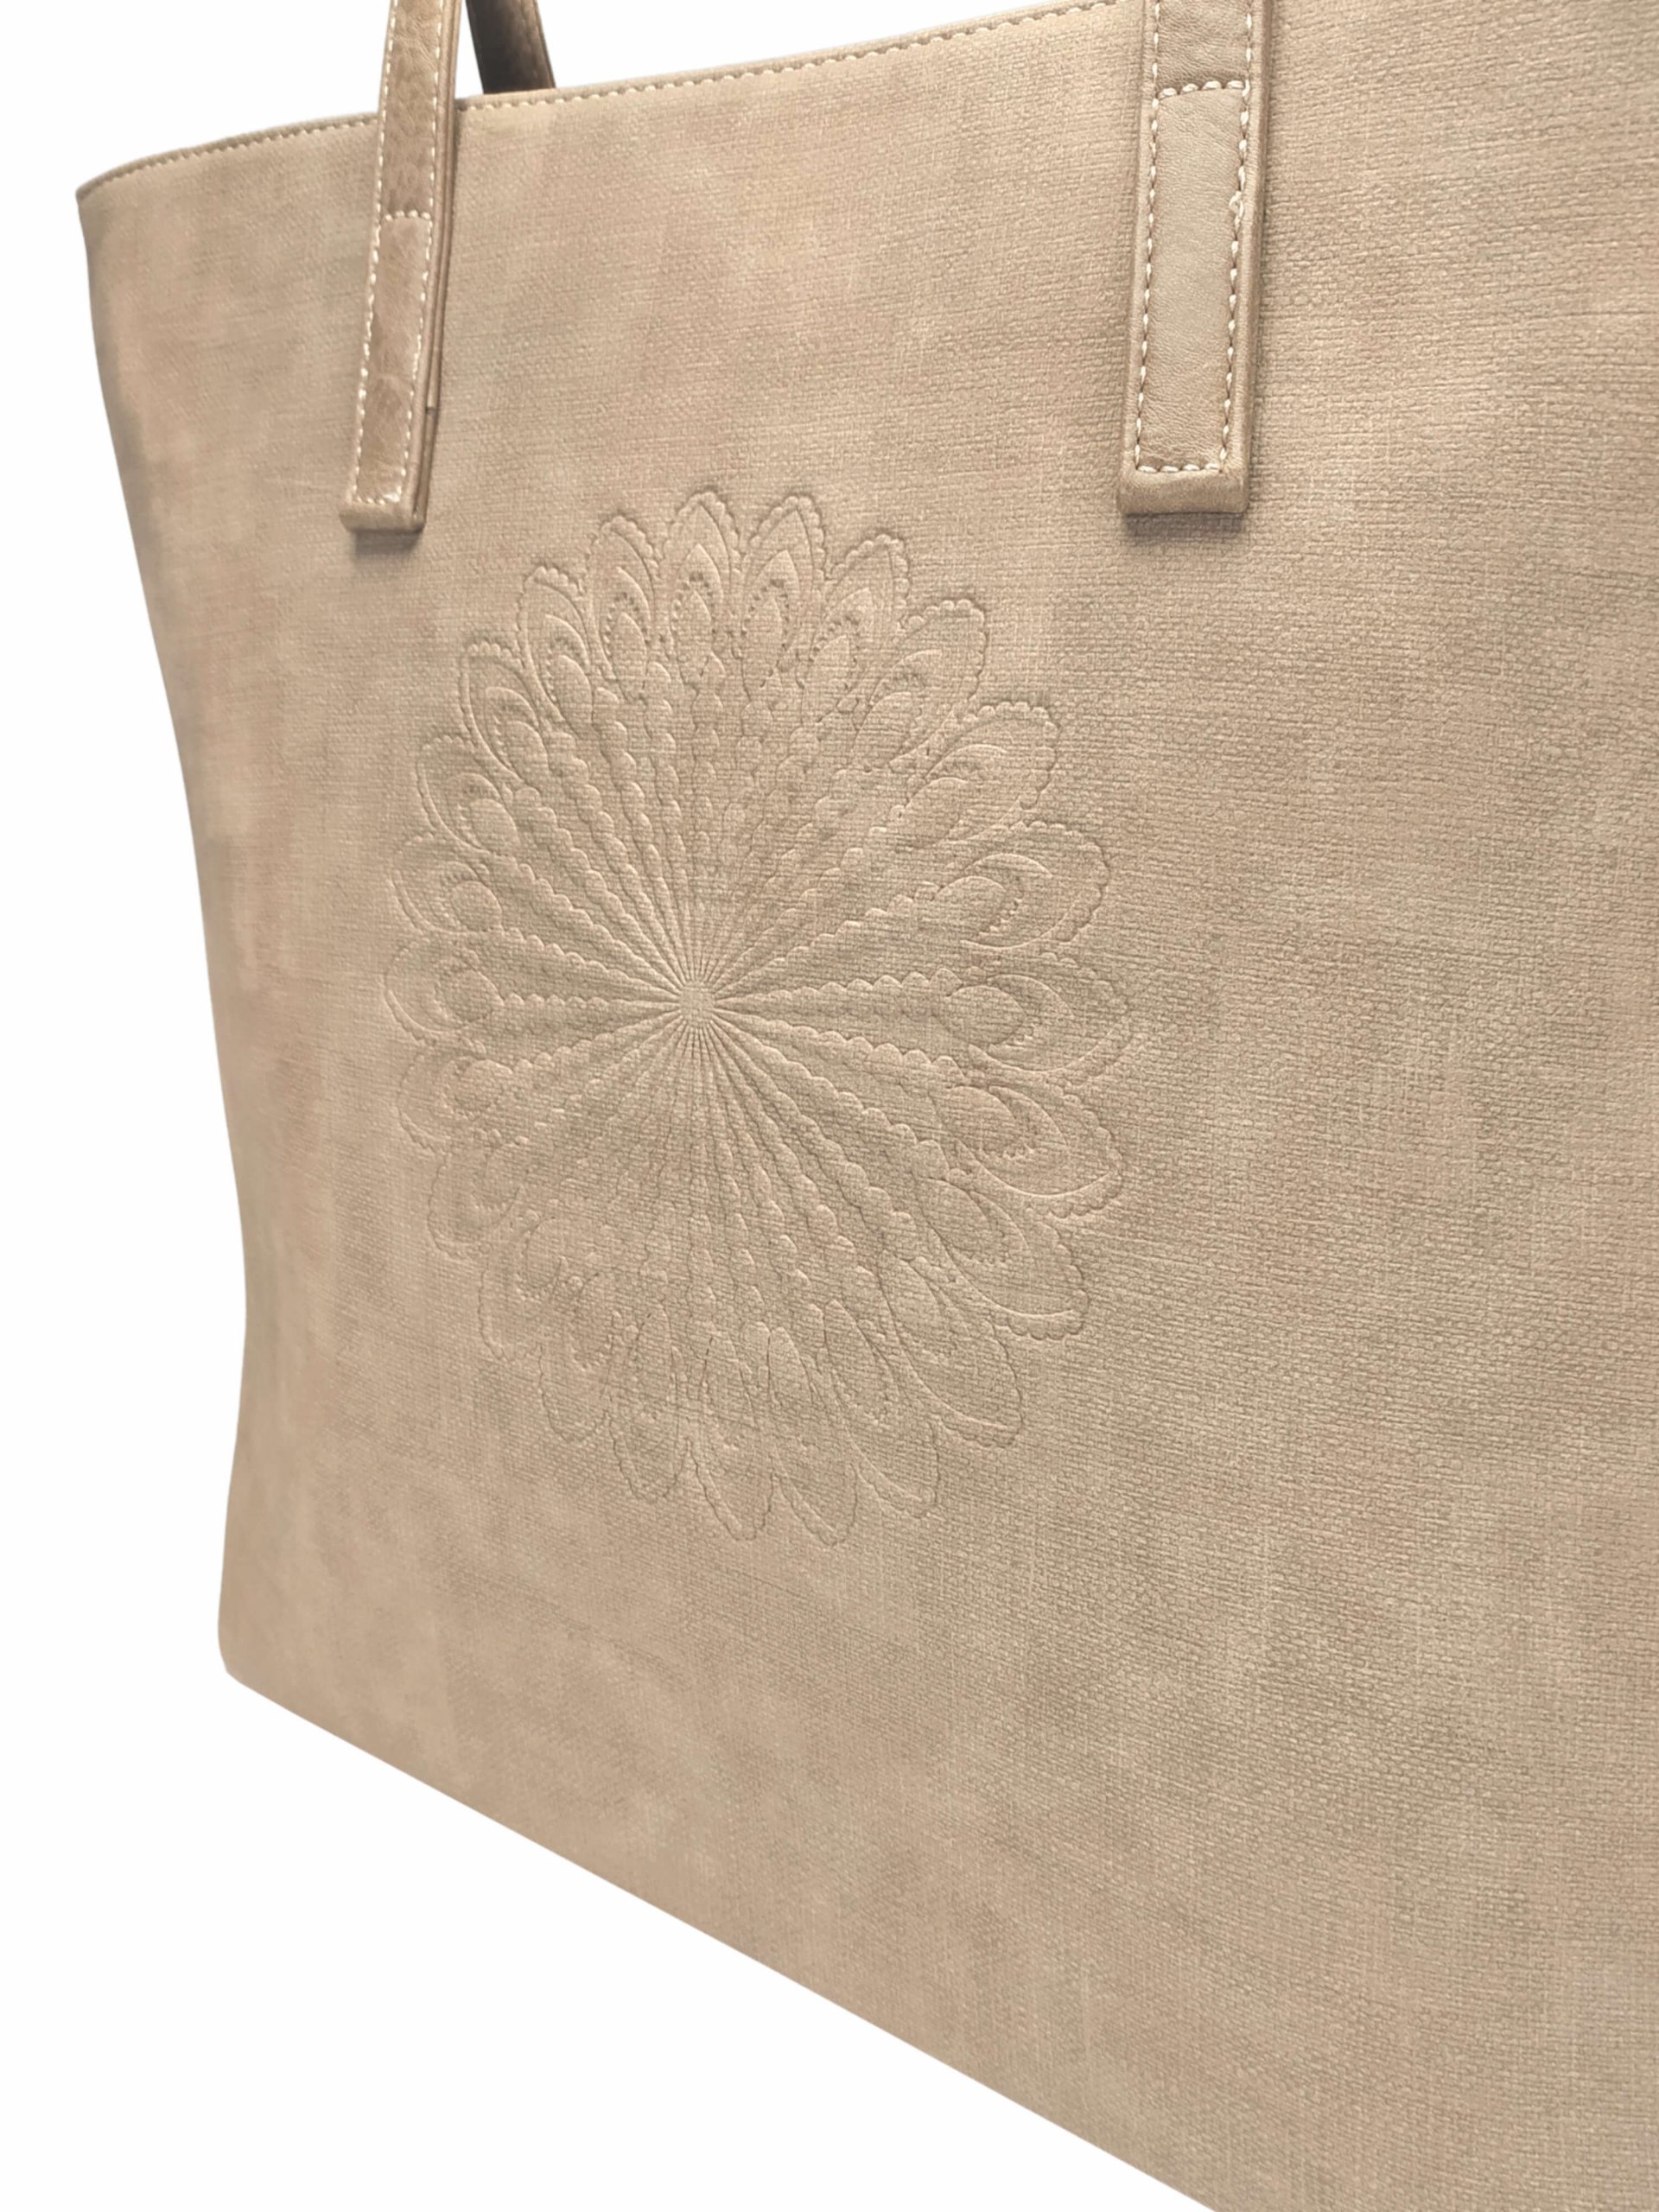 Světle hnědá dámská kabelka přes rameno s texturou, Tapple, H17409, detail zadní strany kabelky přes rameno